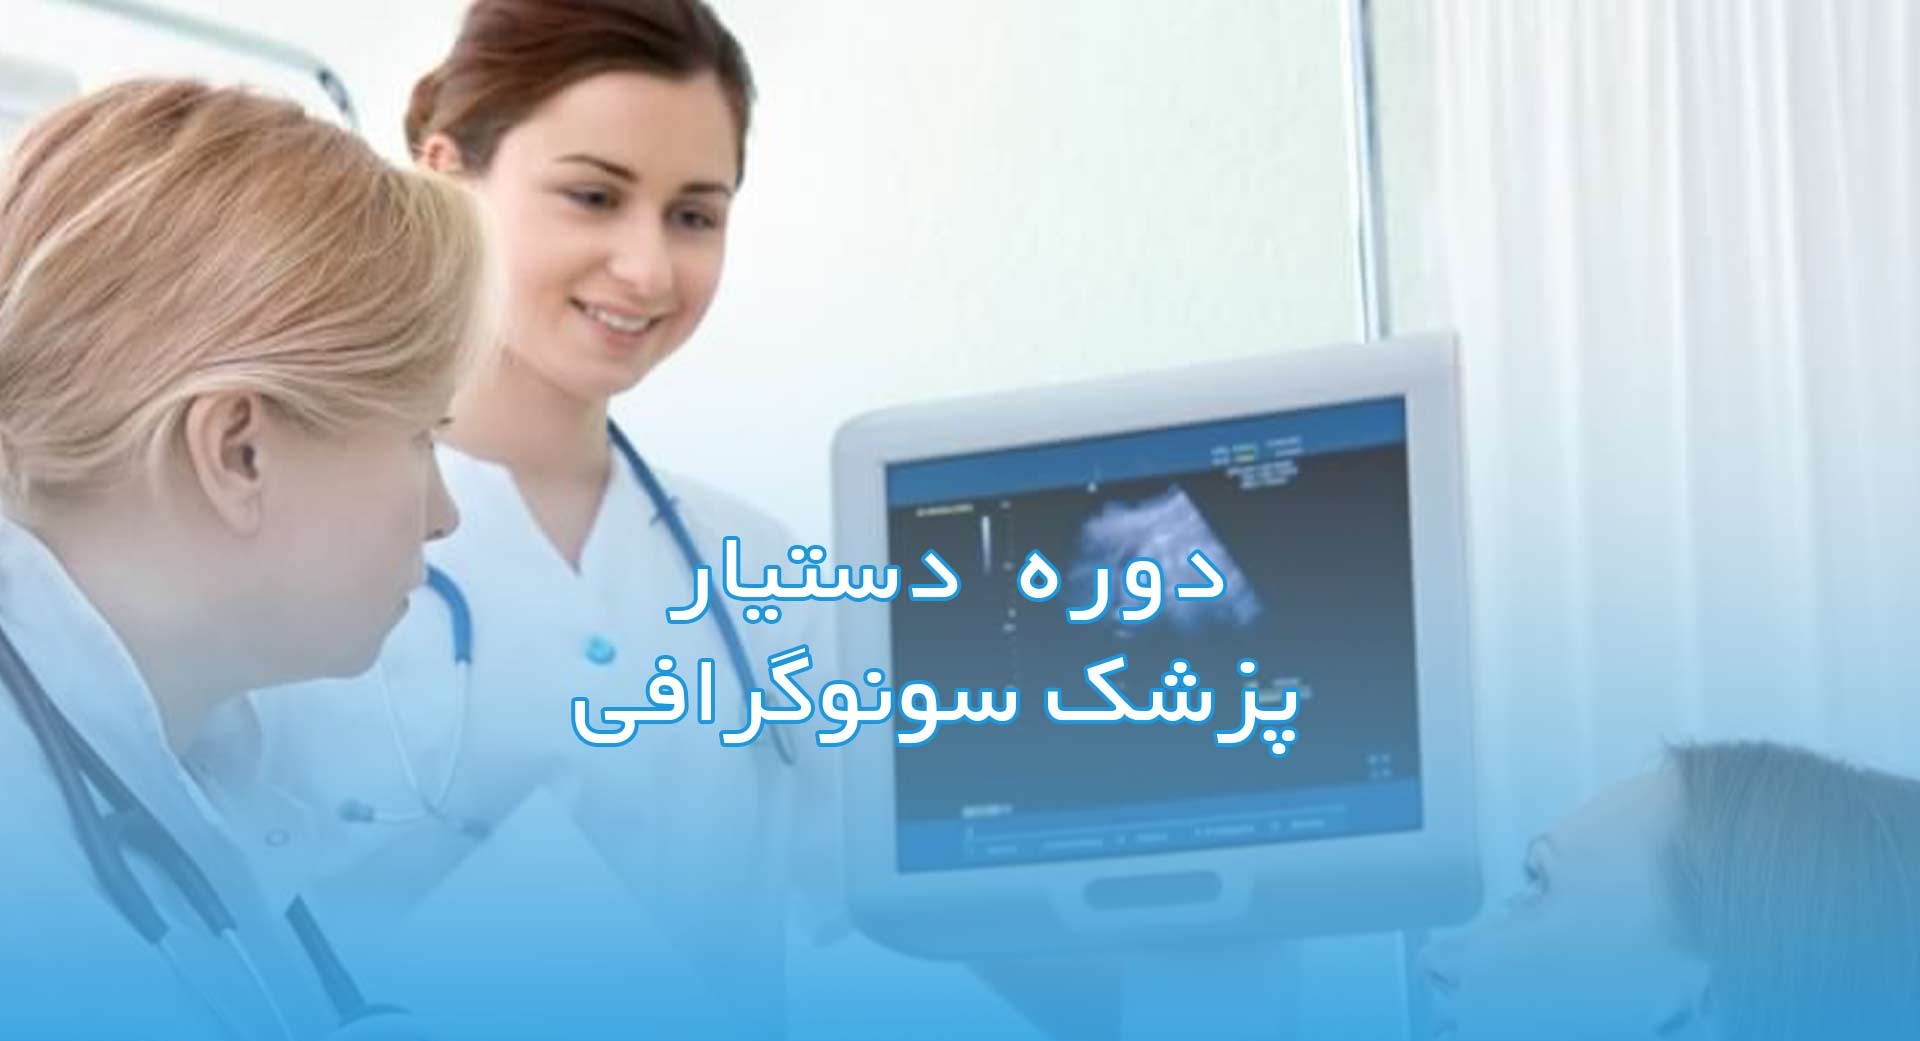 جزوه دوره دستیار پزشک متخصص رادیولوژی و سونوگرافی